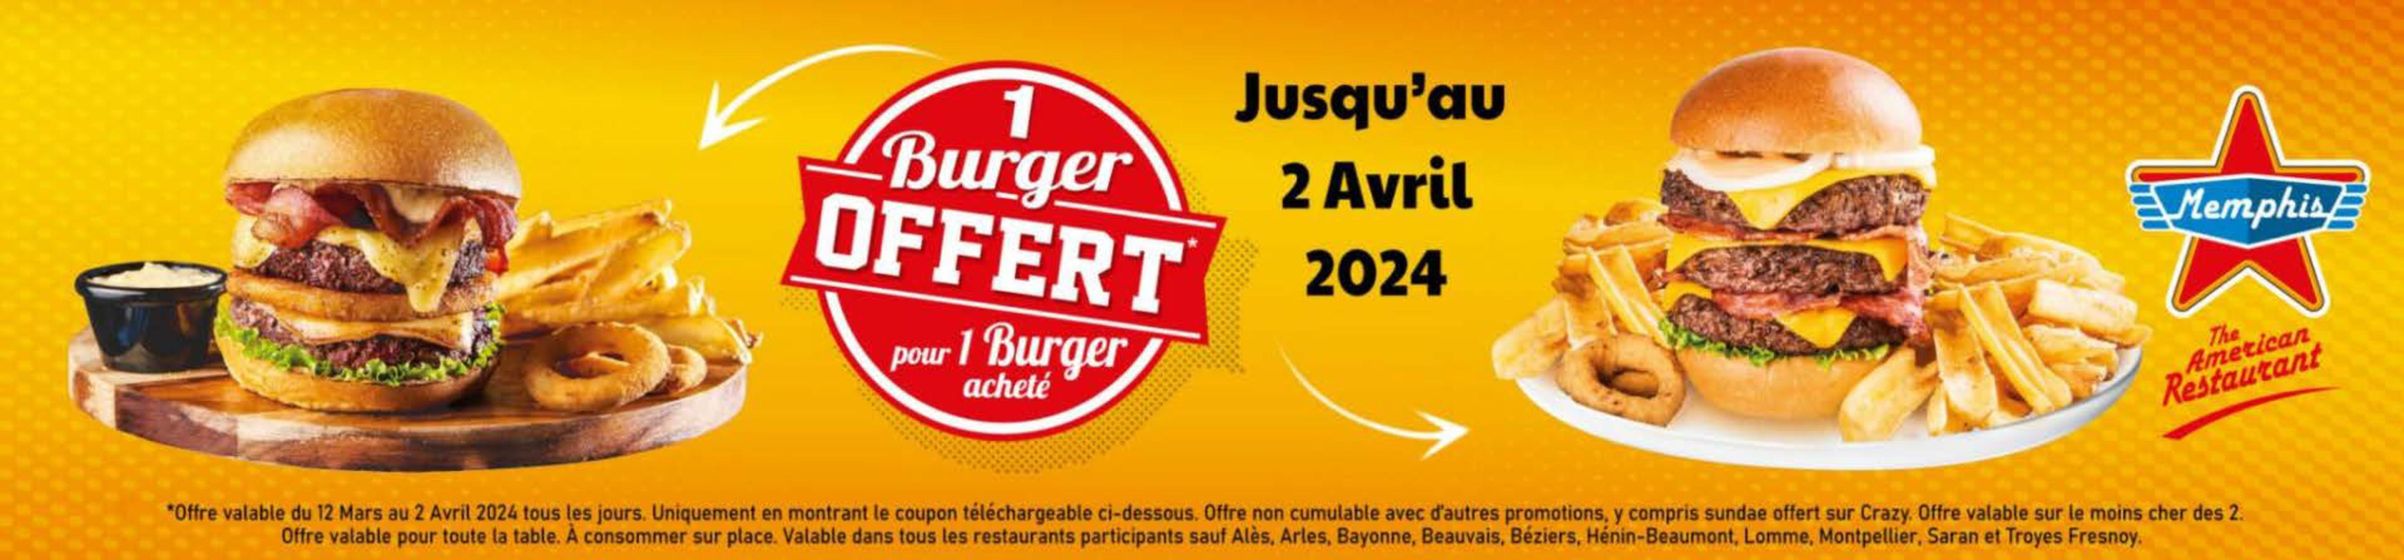 Catalogue Memphis Coffee à Arles | 1 Burger Offert Pour 1 Burger Acheté | 25/03/2024 - 02/04/2024